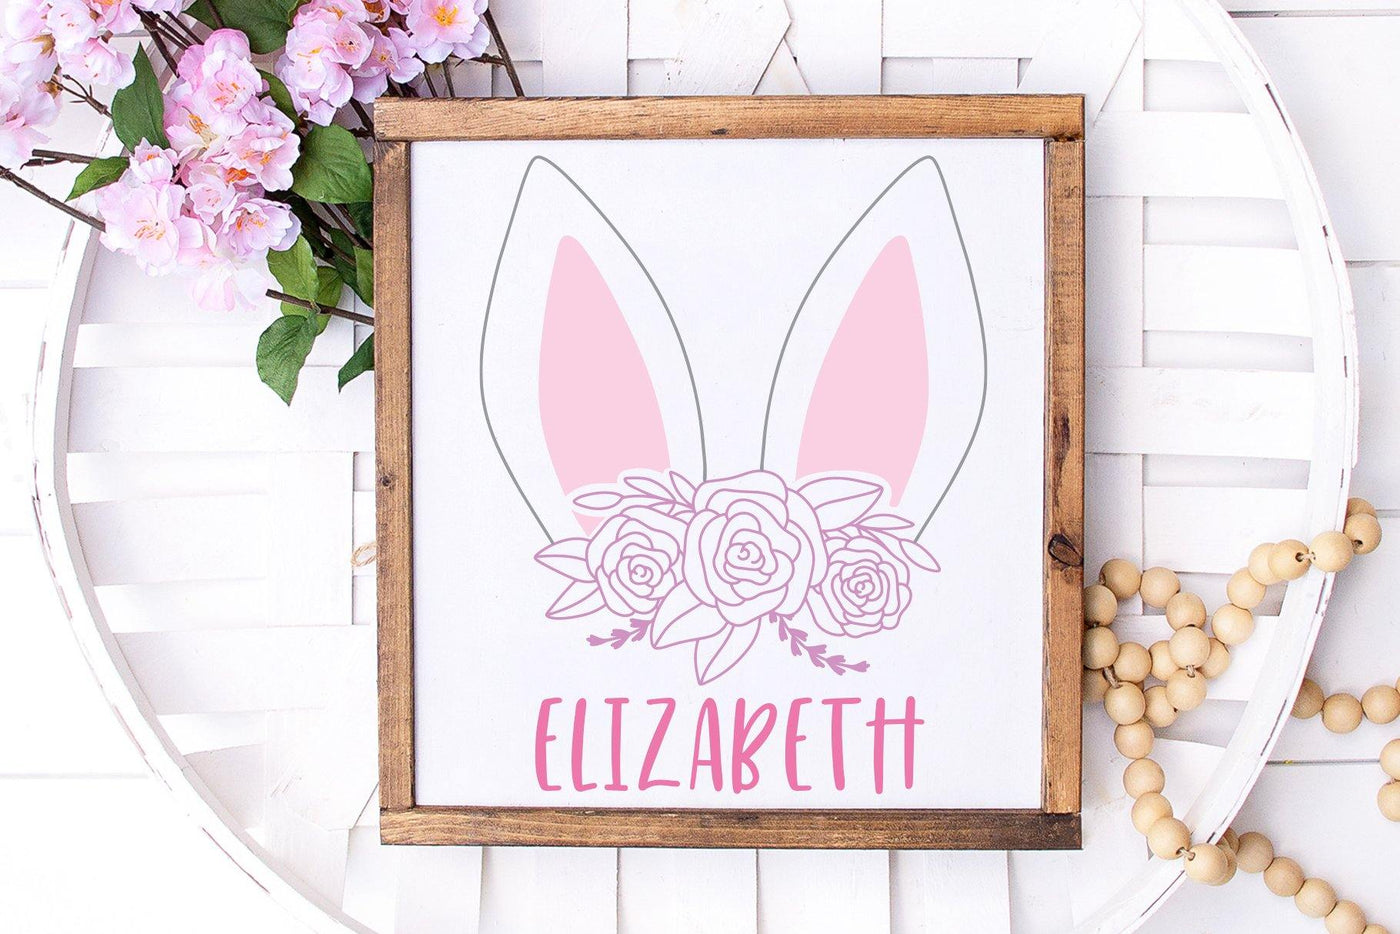 Cut File | Floral Easter Bunny Ears - JordynAlisonDesigns